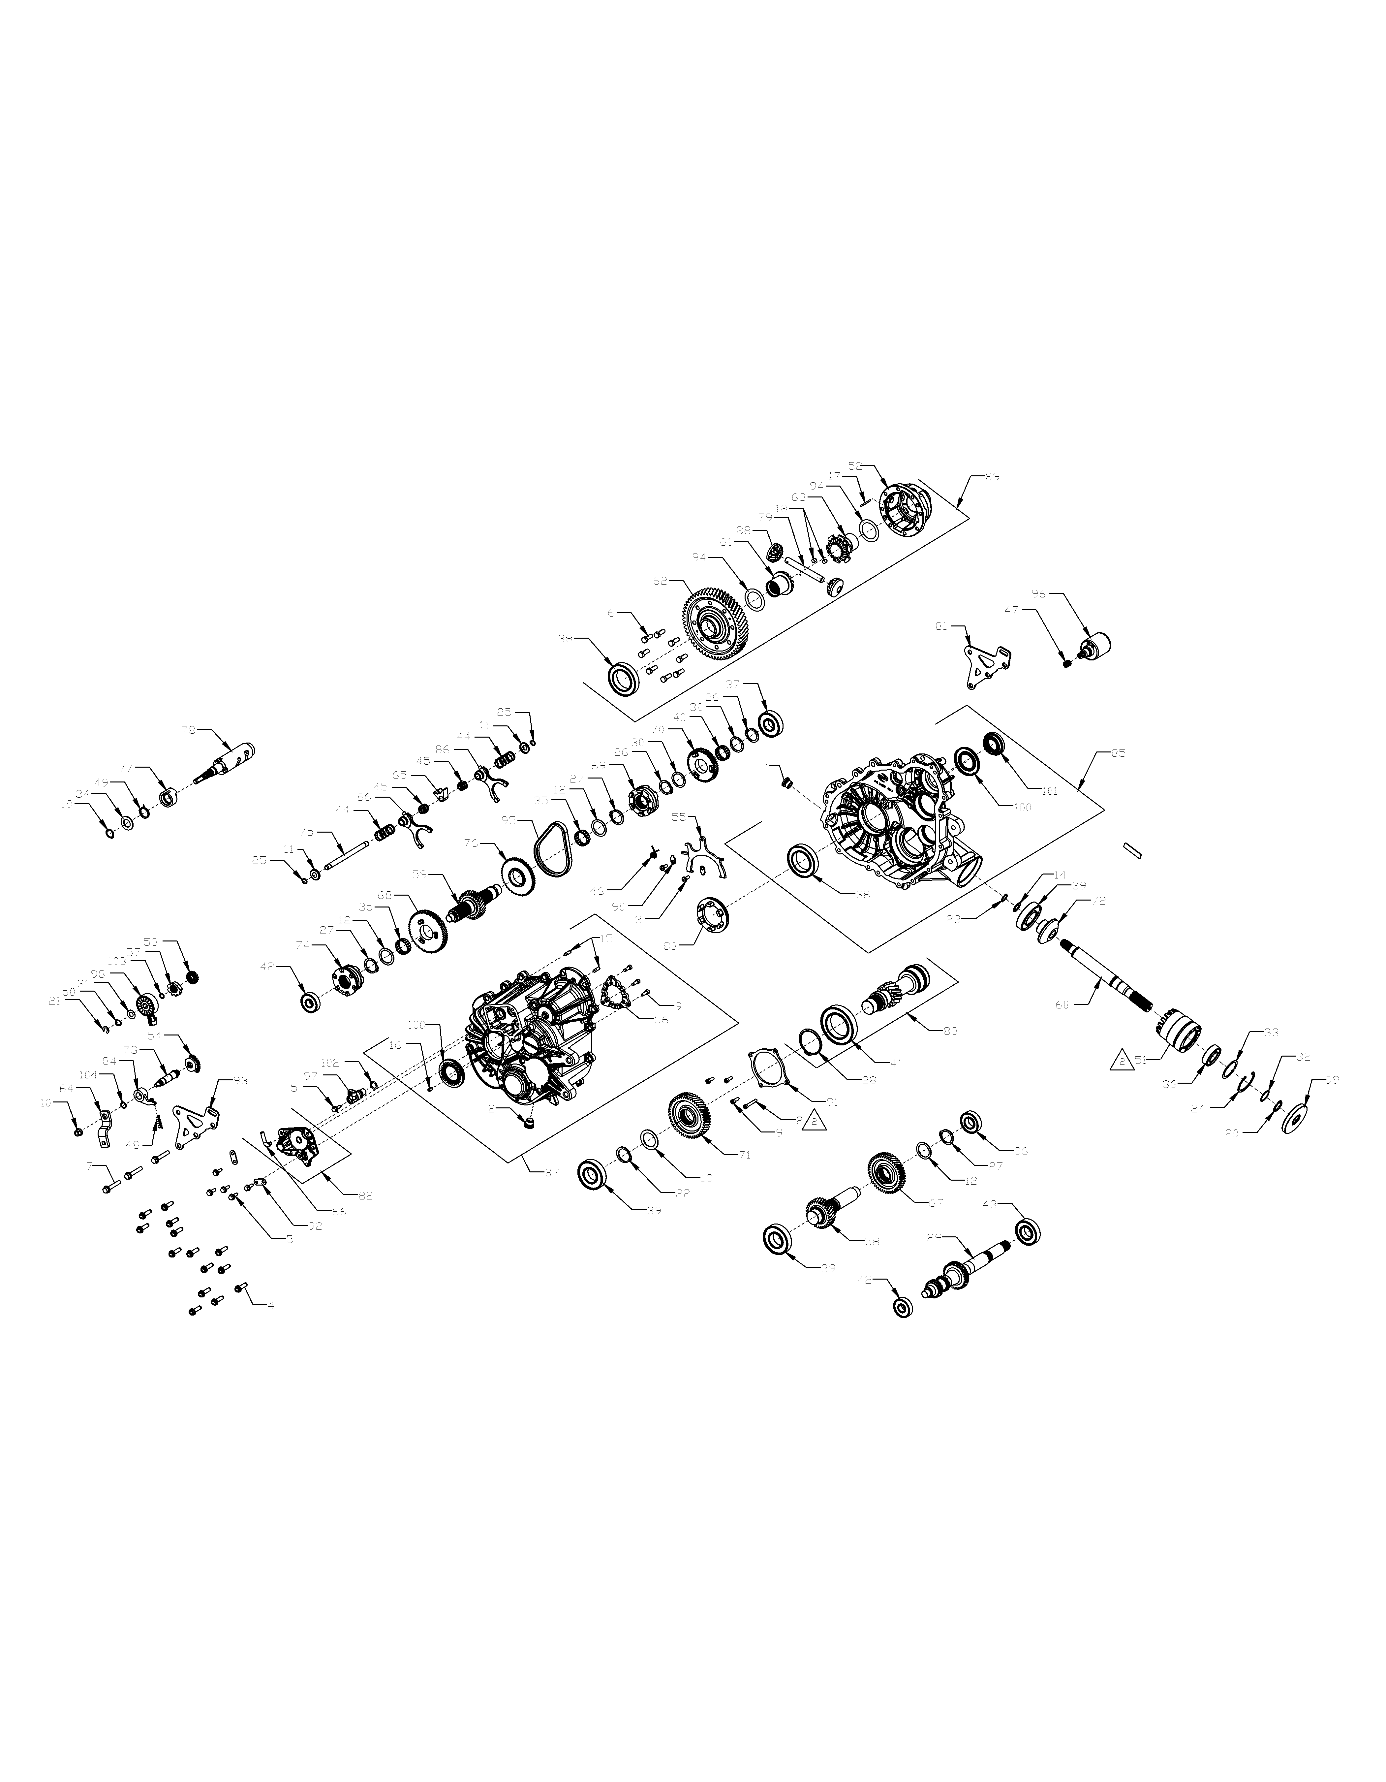 Foto diagrama Polaris que contem a peça 3236291